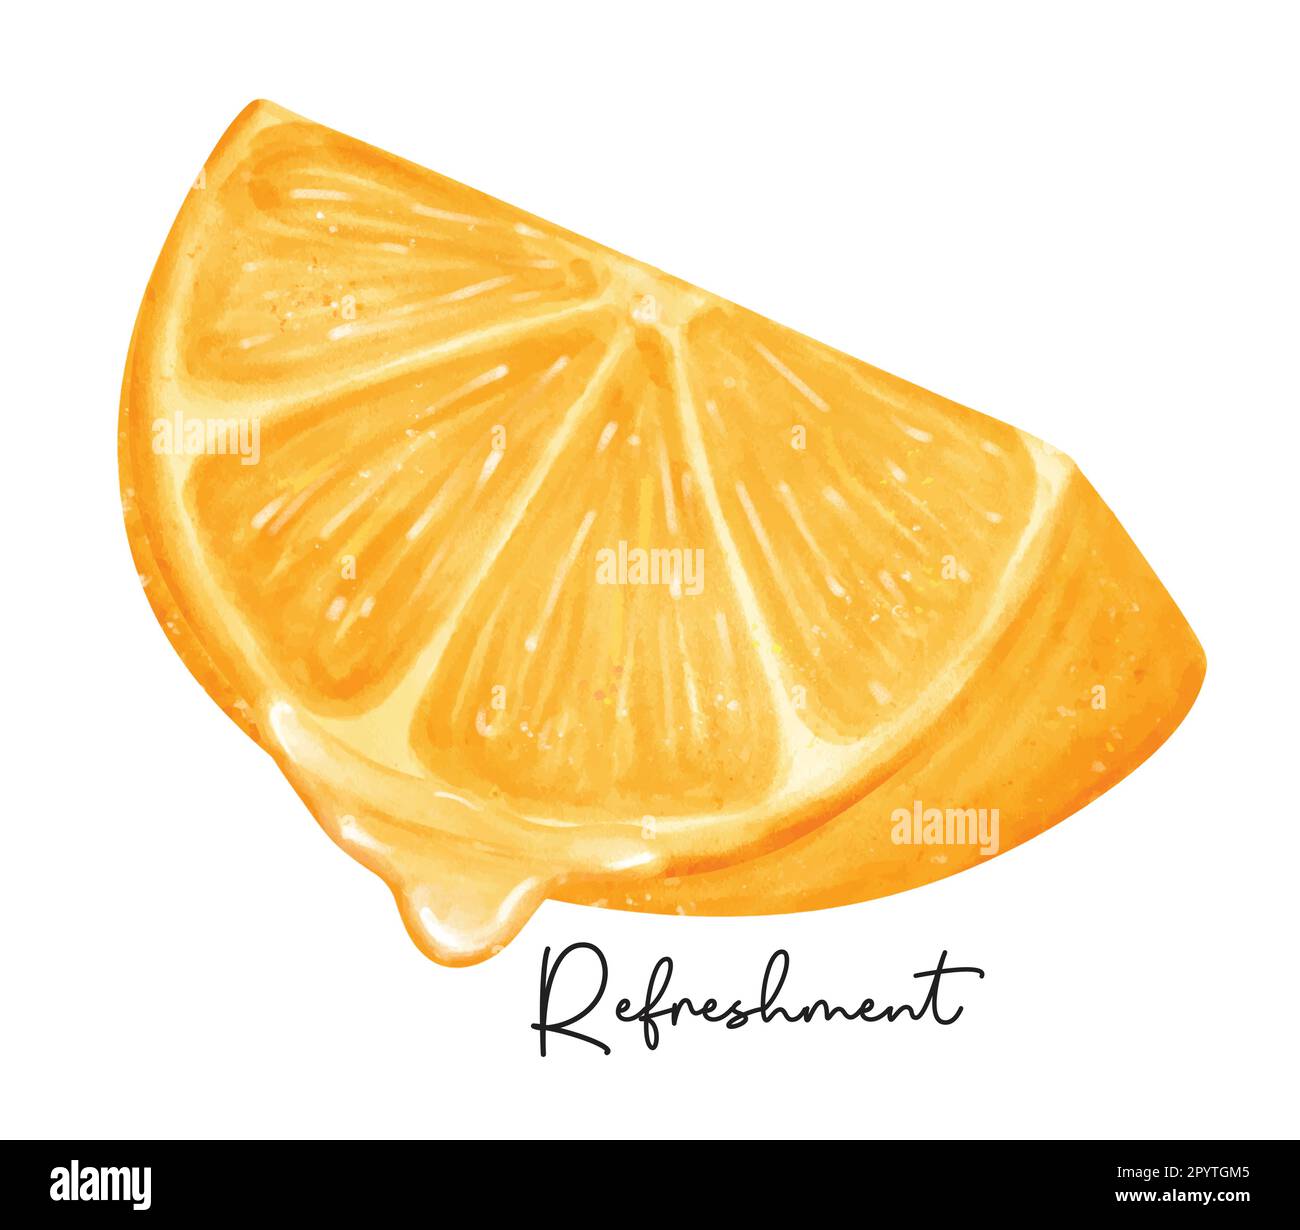 Refreshment quarto taglio di frutta arancione con acquerello liquido pittura a mano semirealista vettore di illustrazione isolato su sfondo bianco. Illustrazione Vettoriale